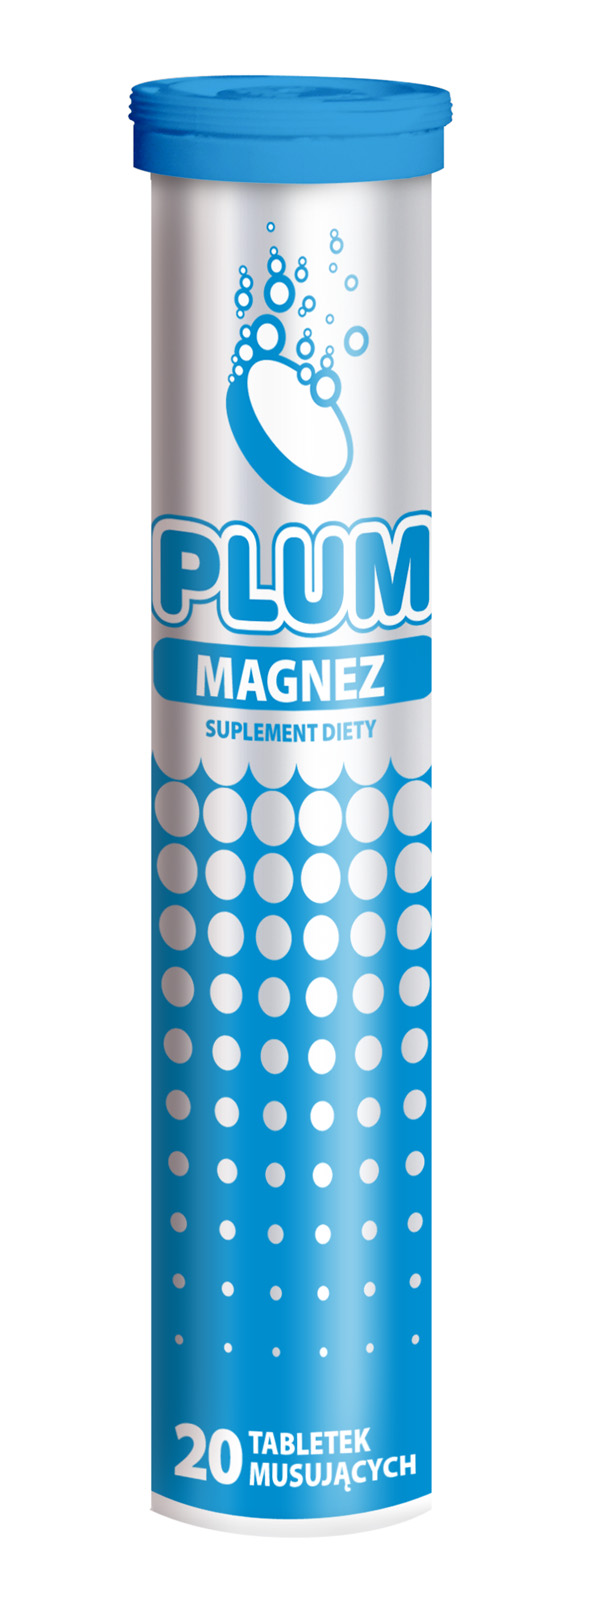 Plum Magnez Suplement diety. 20 tabletek musujących o smaku cytrynowym.